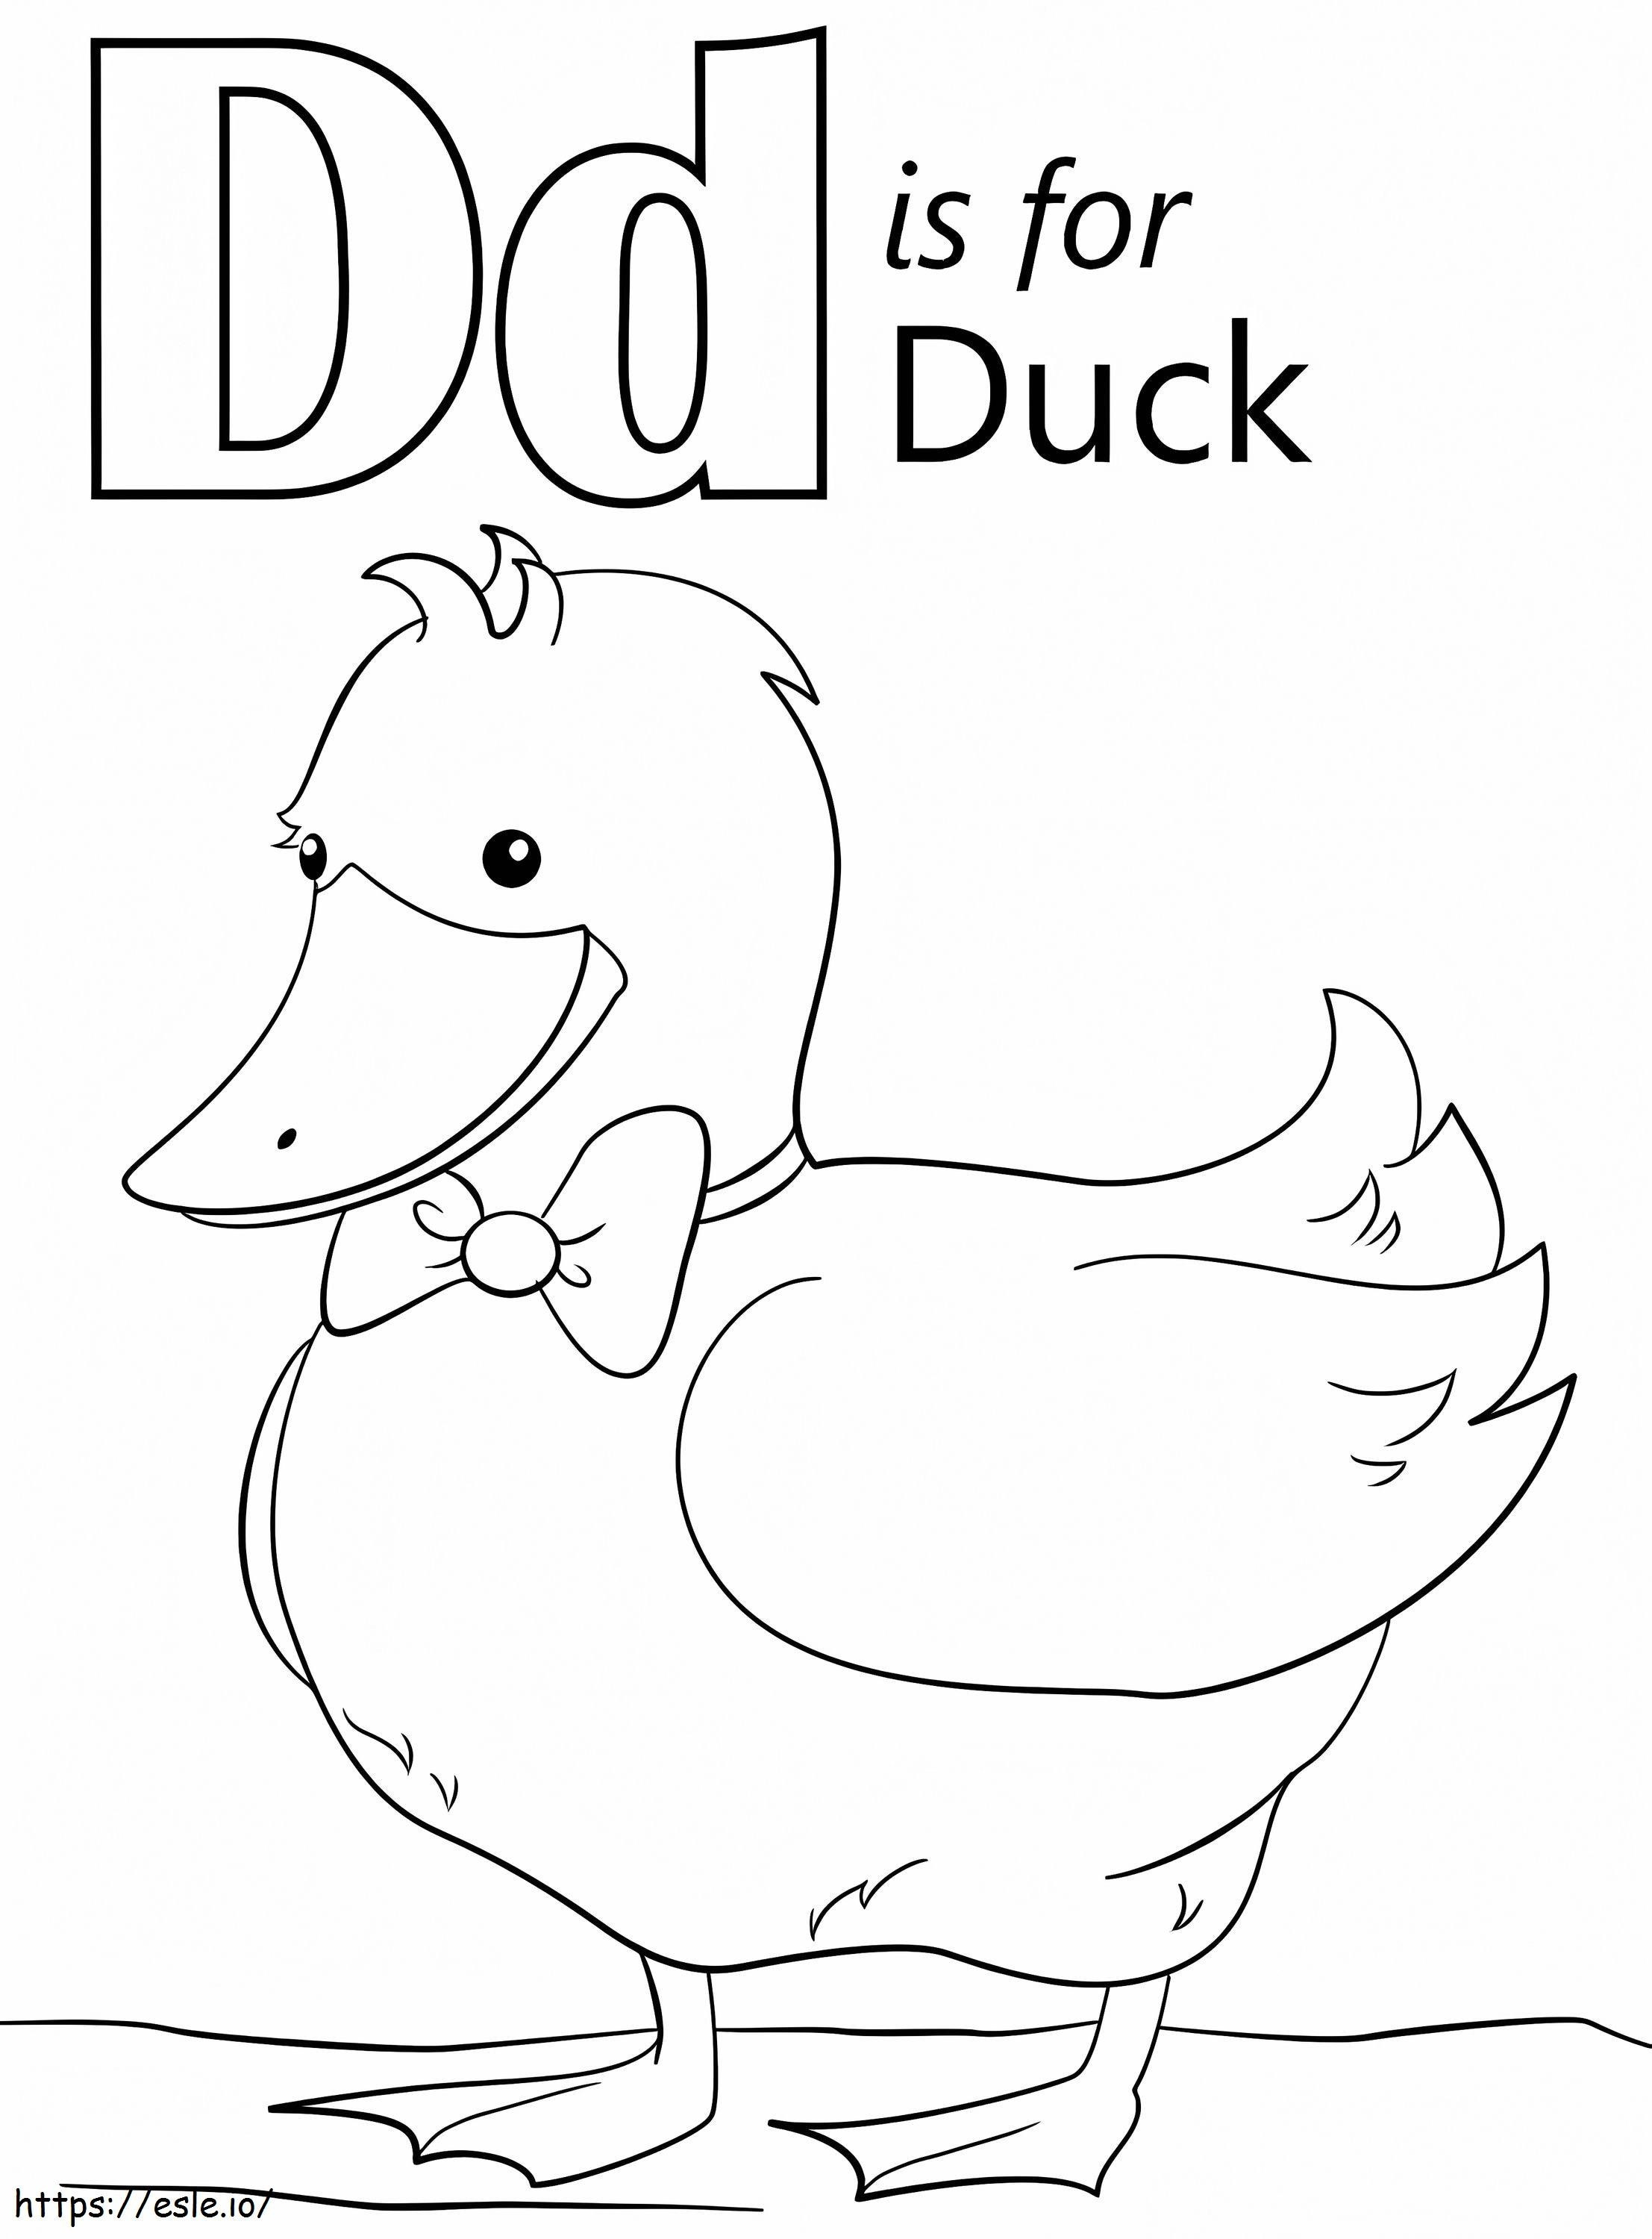 Duck litera D de colorat